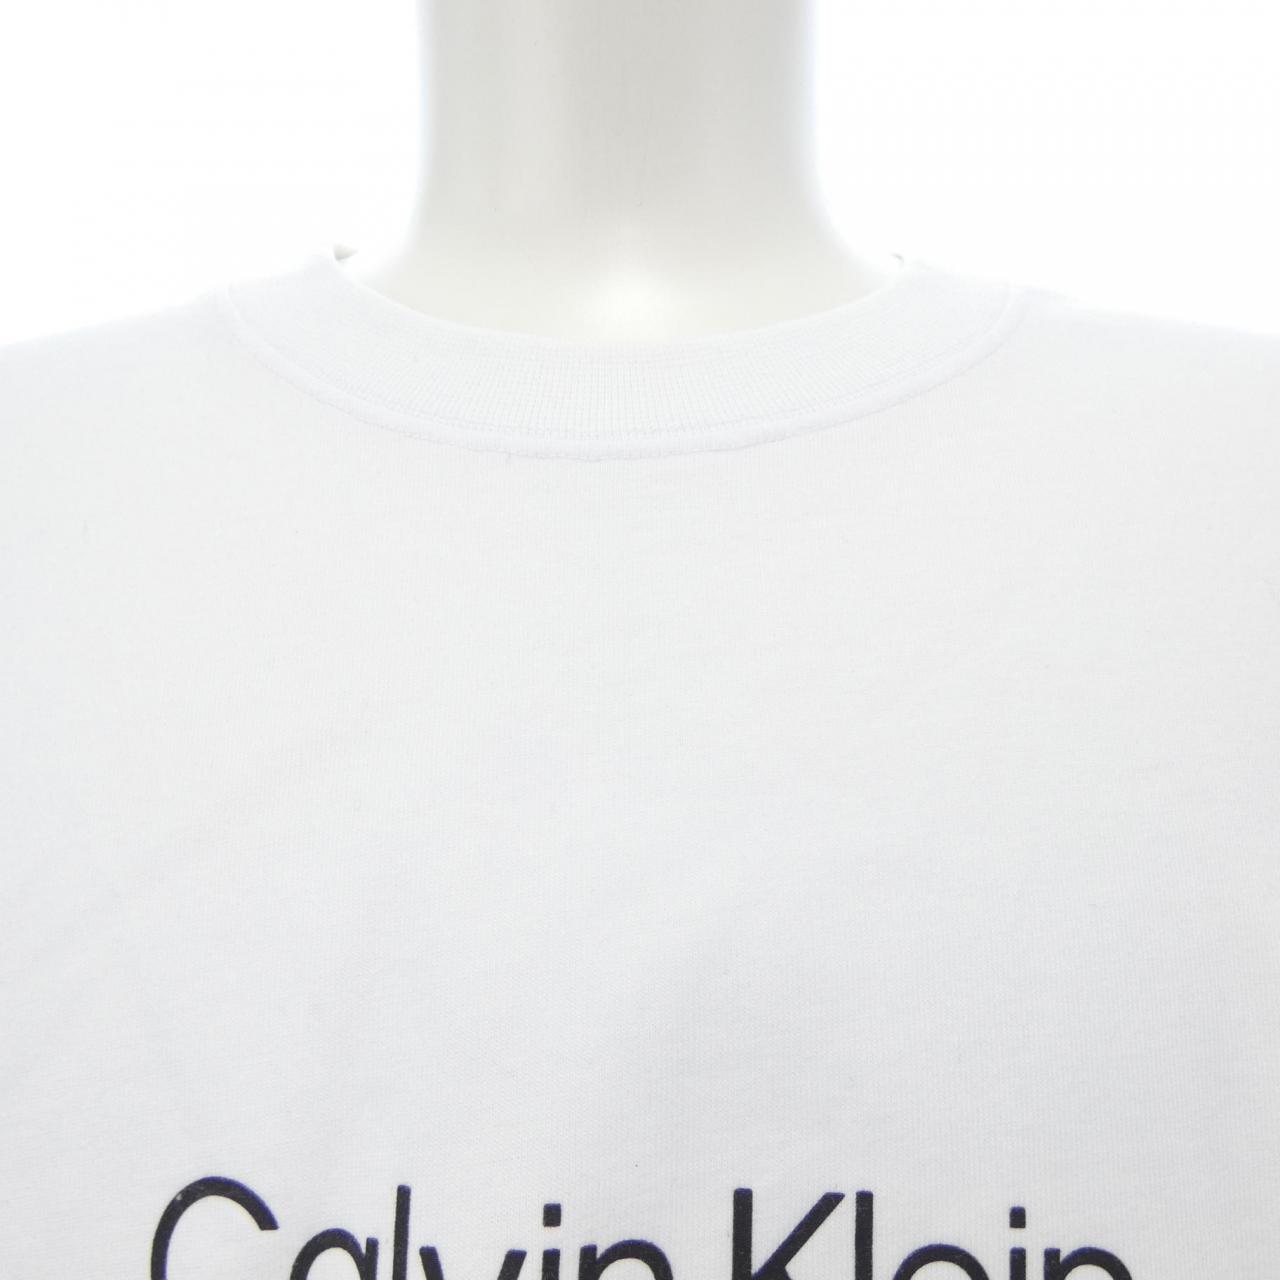 カルバンクライン Calvin Klein Tシャツ